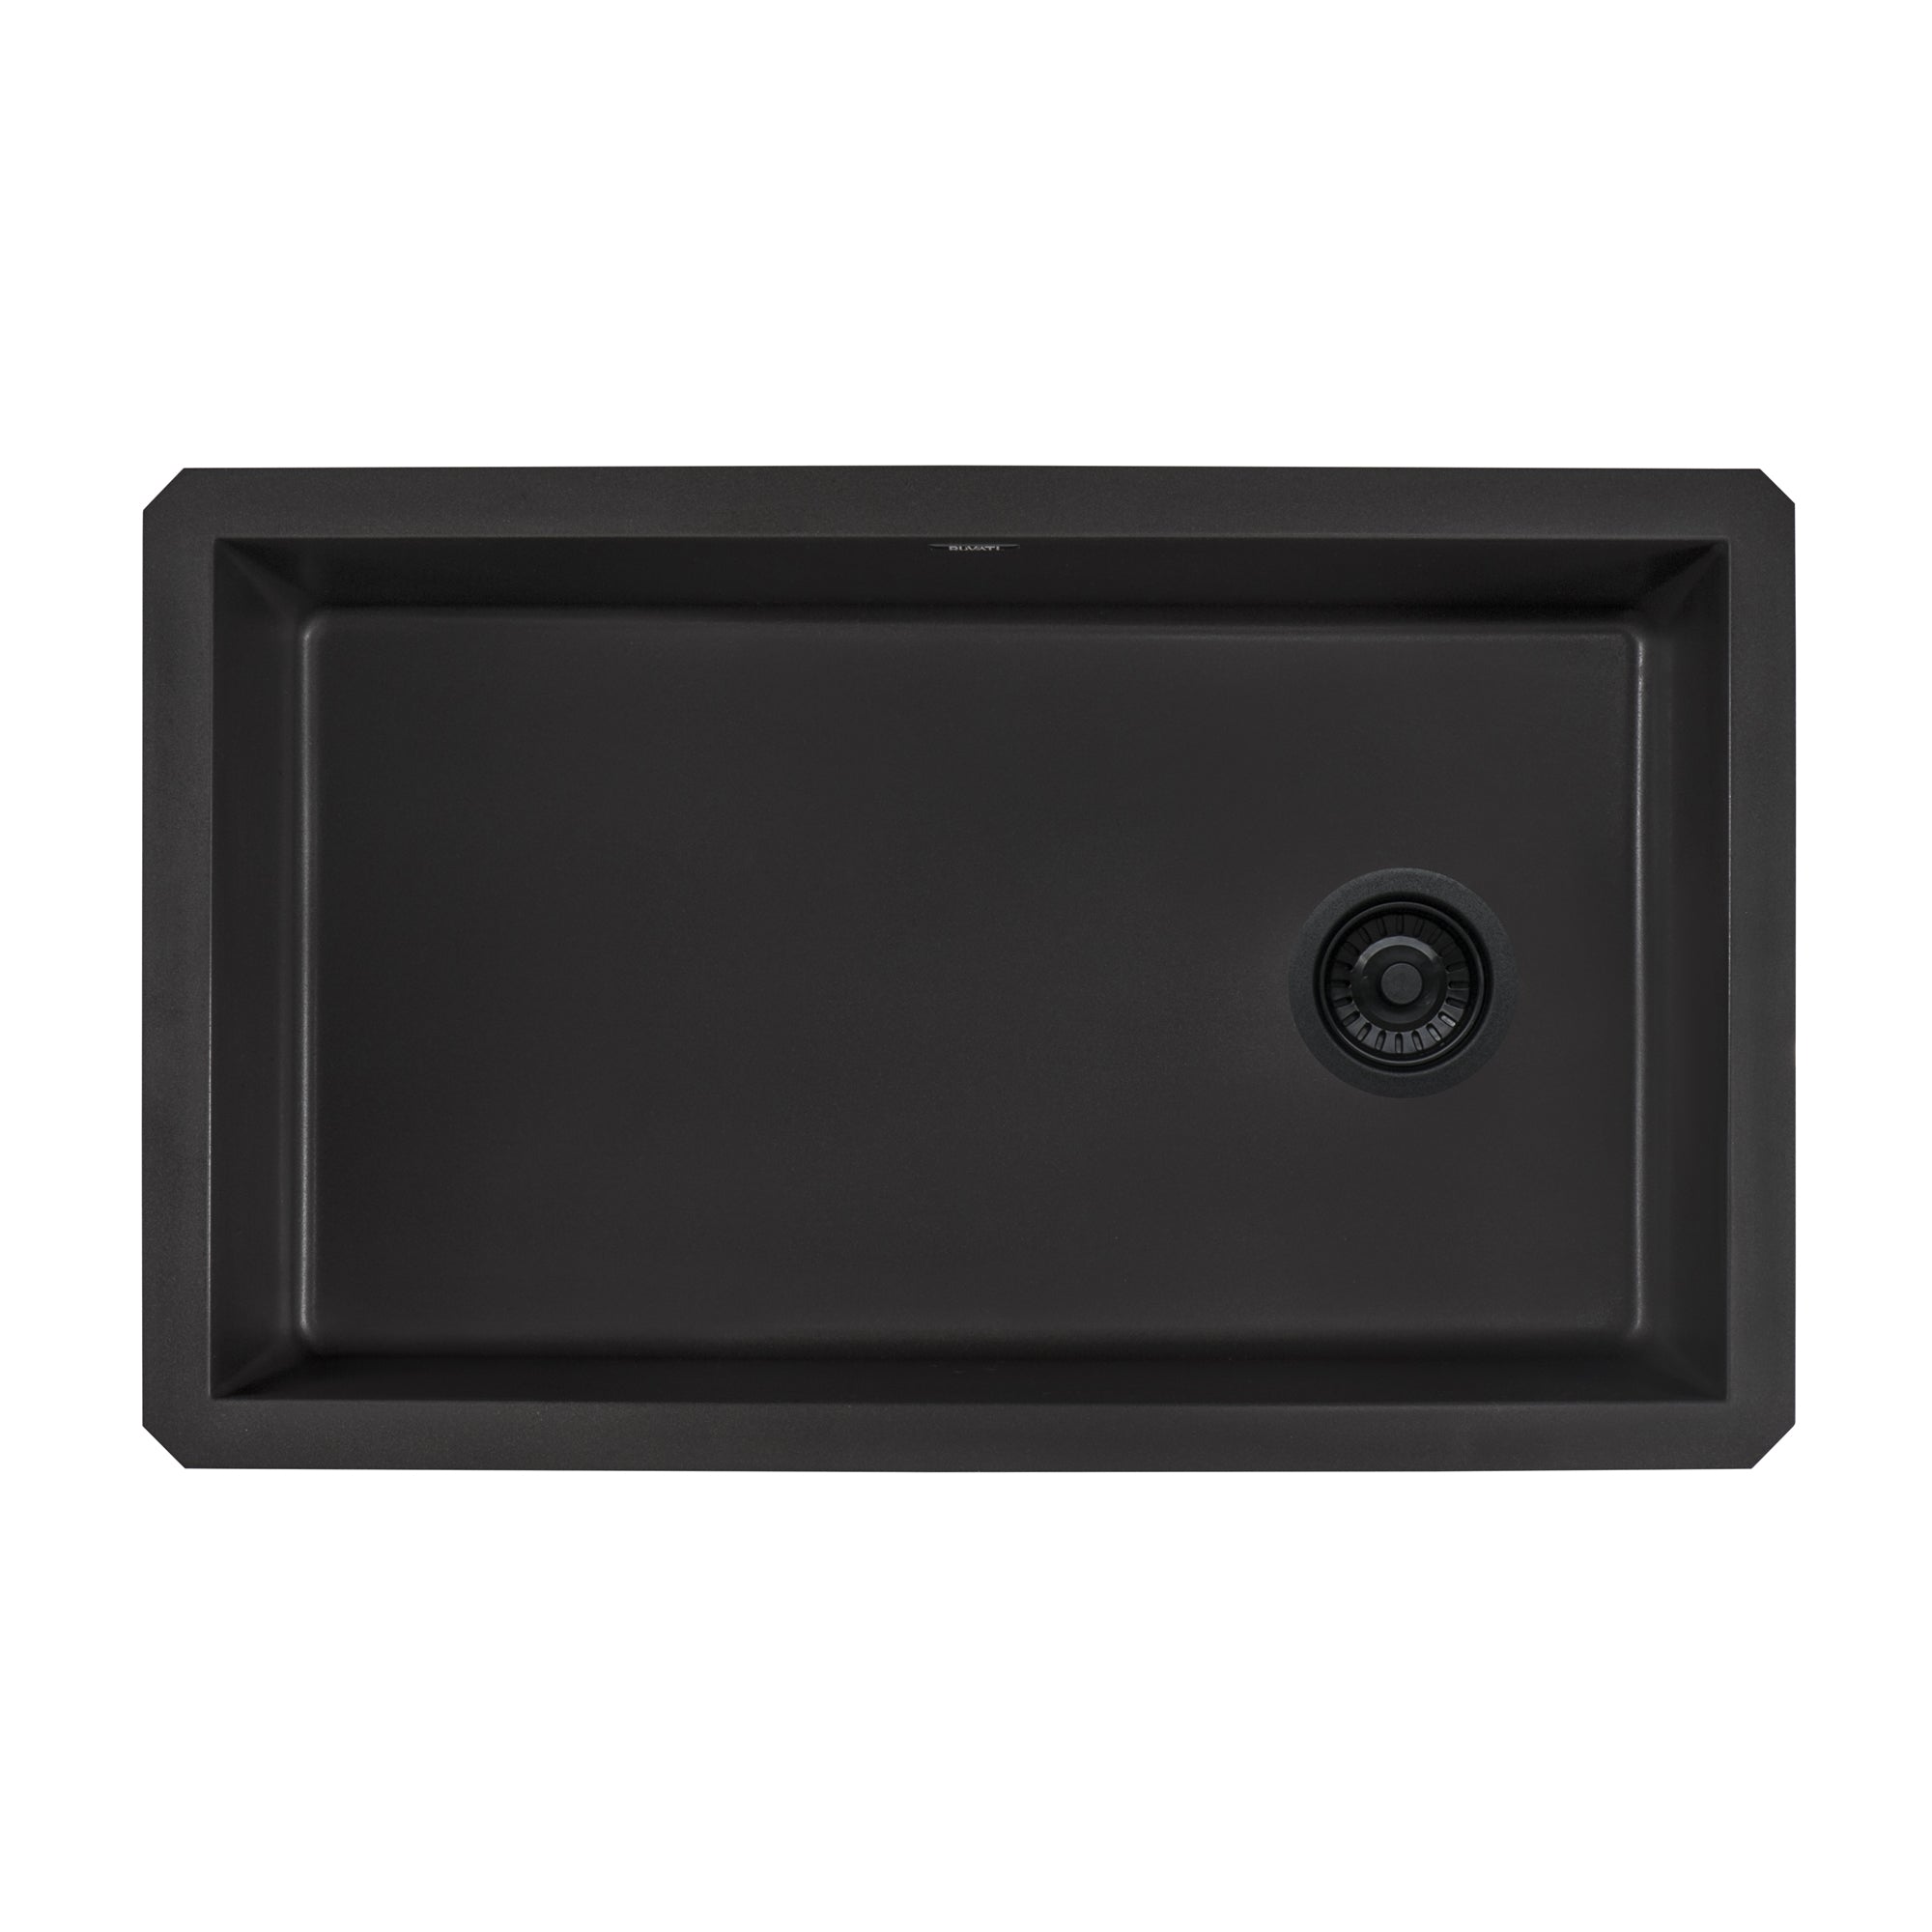 32 x 19 inch epiGranite Undermount Granite Composite Single Bowl Kitchen Sink – Midnight Black